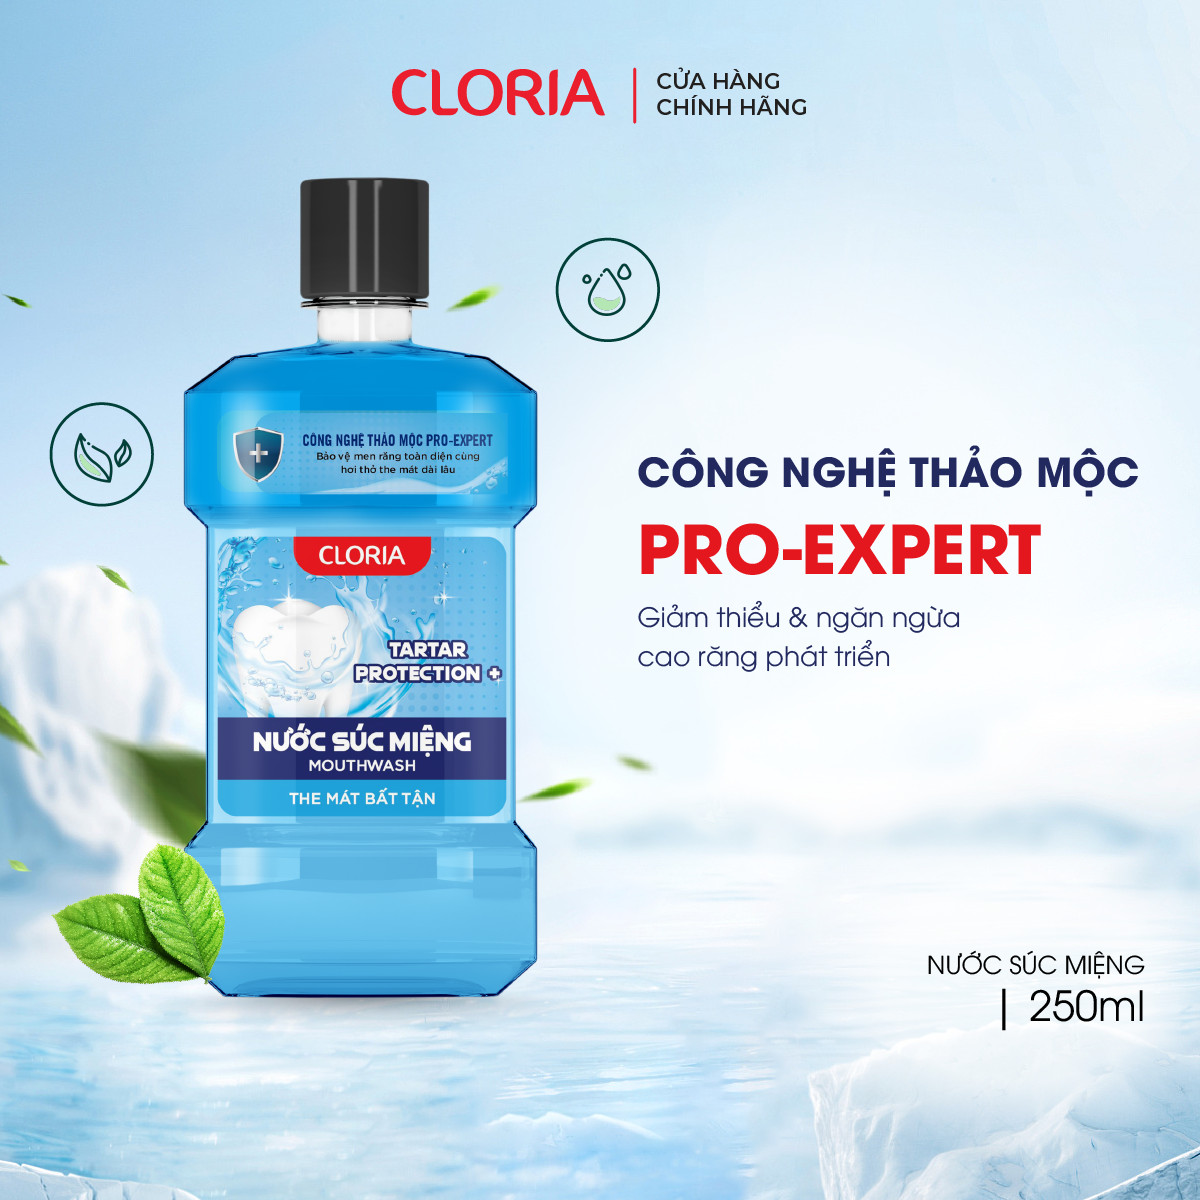 Nước súc miệng Tartar Protection+ Cloria, bảo vệ men răng toàn diện (250ml) - Bảo Hành 100%